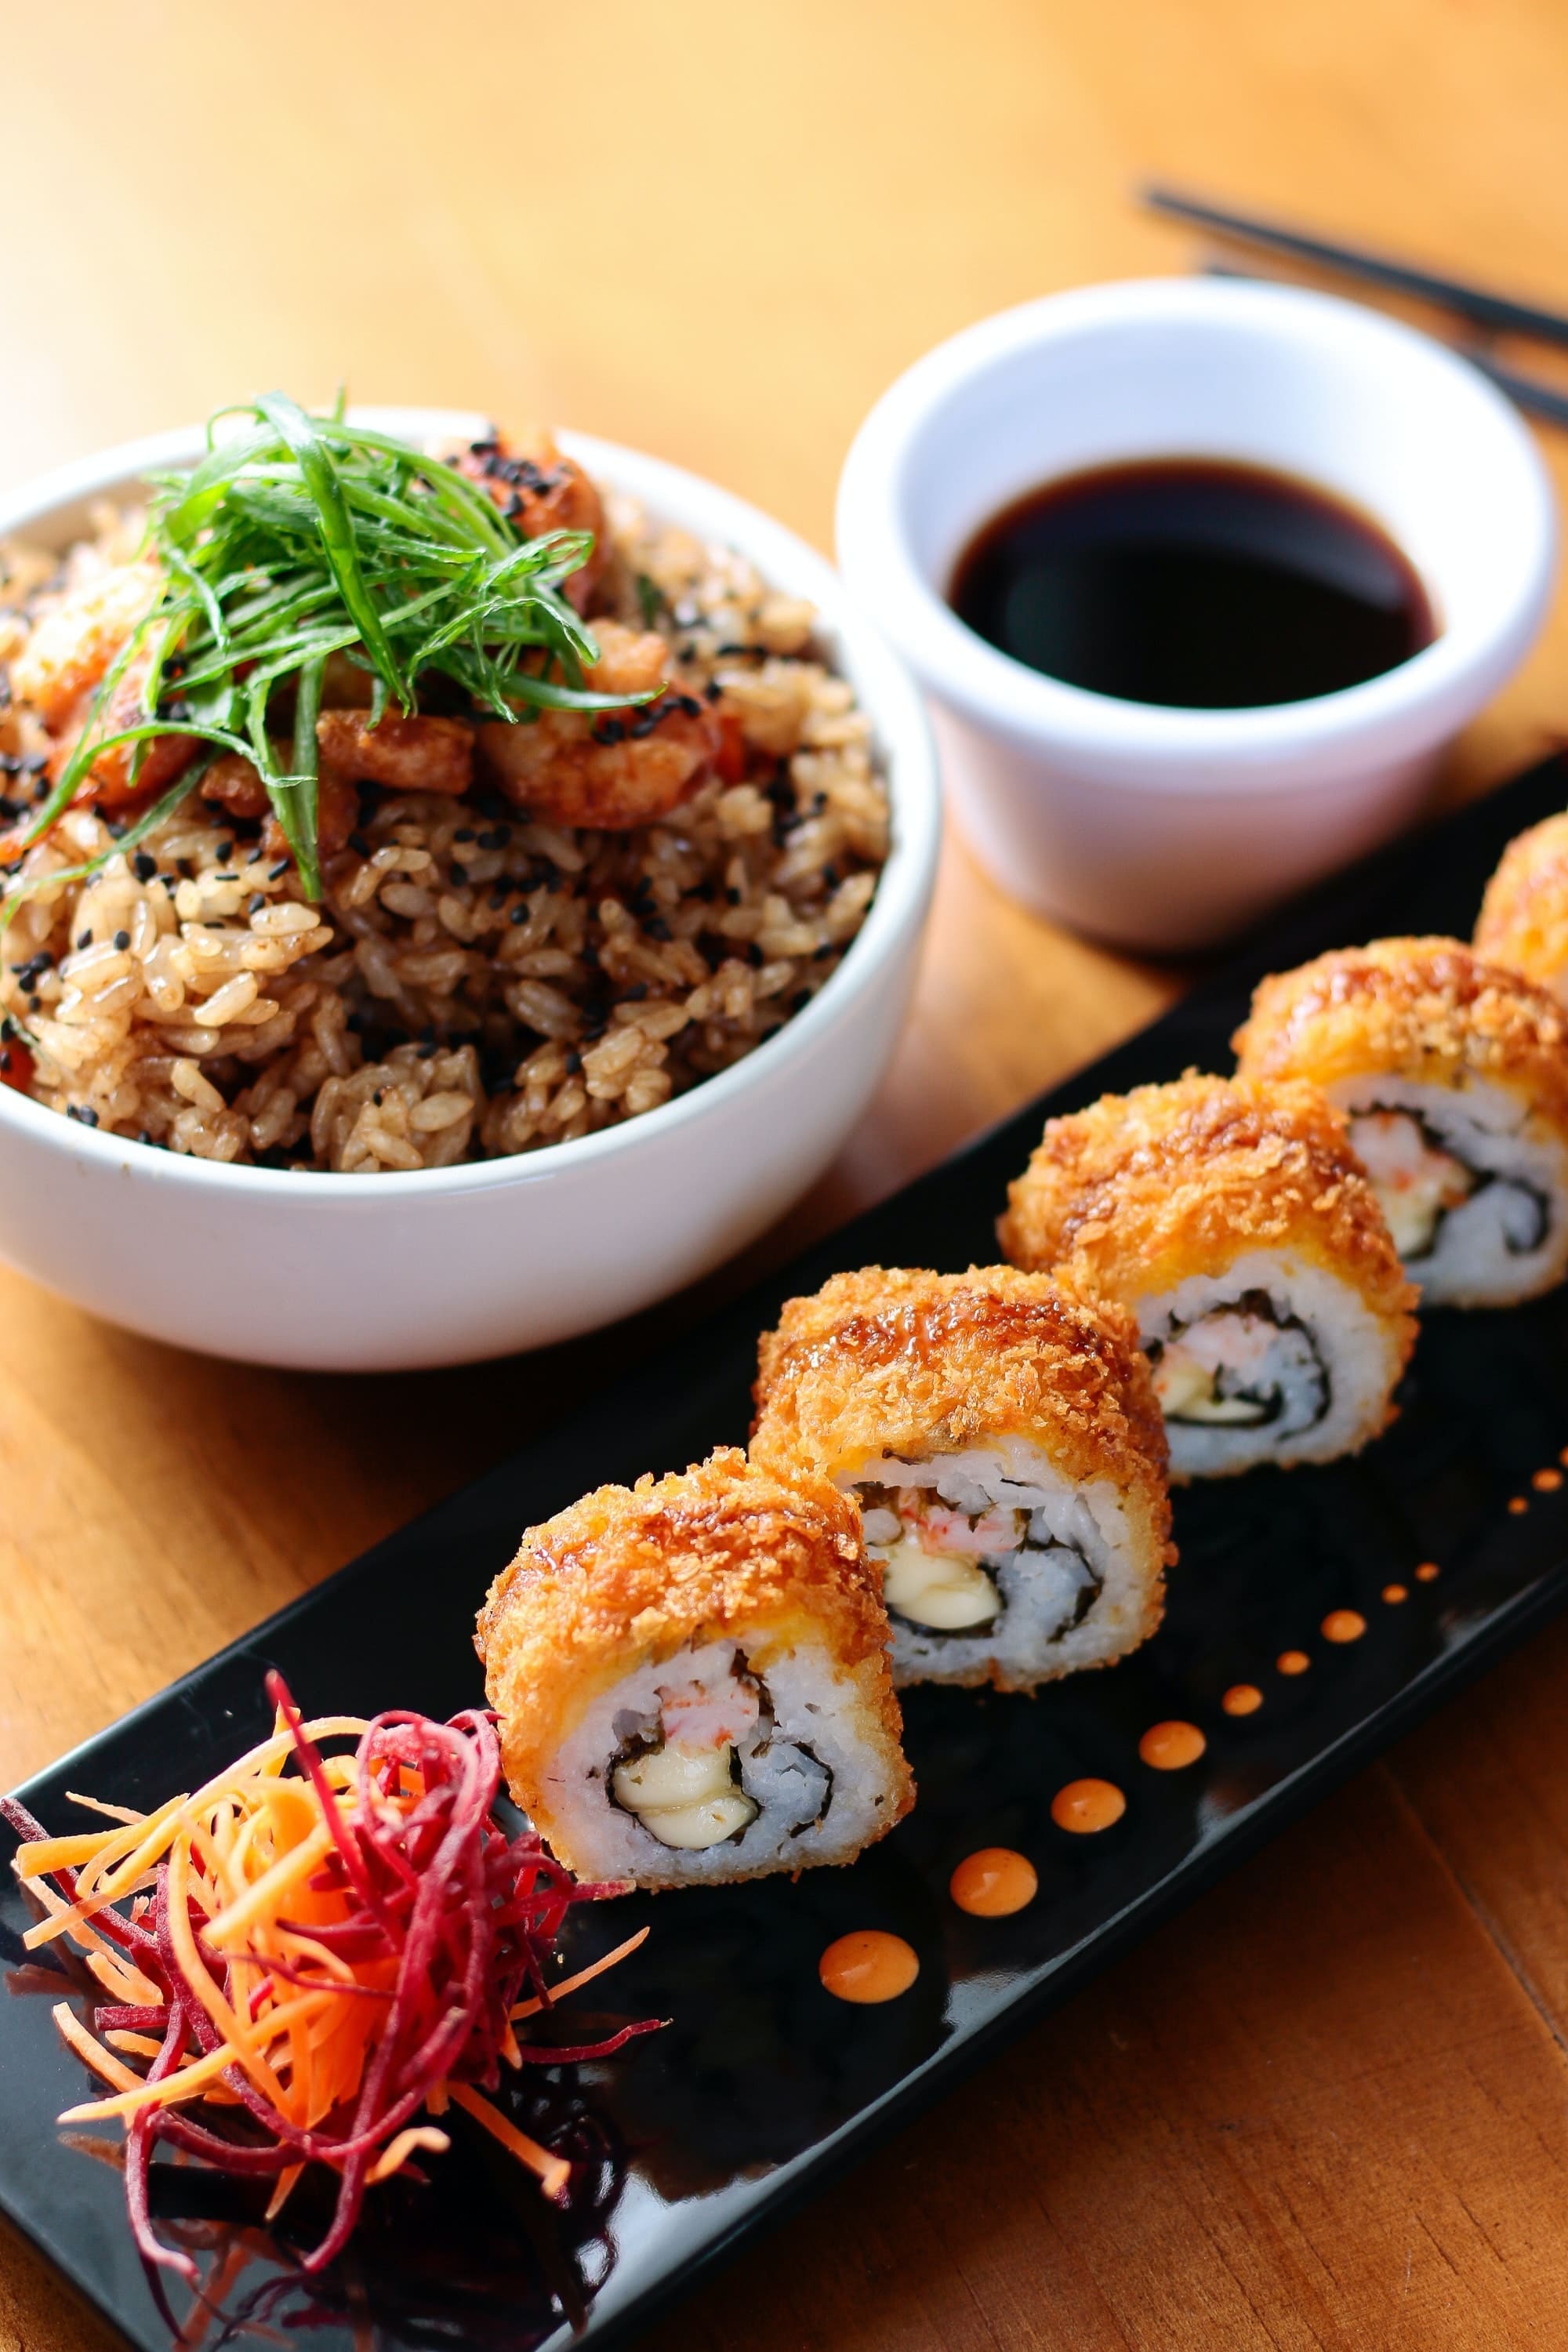 Imagen de sushi elegantemente presentado, con una cuidadosa disposición de ingredientes frescos y colores vibrantes que cautivarán tu paladar